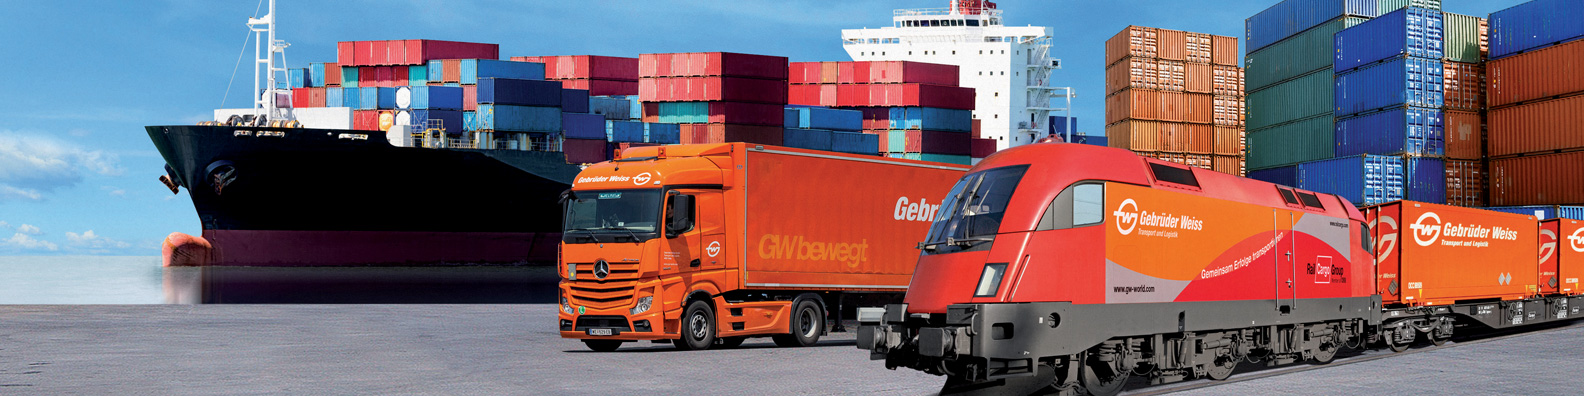 Gebrüder Weiss: Vodeća kompanija u oblasti transporta i logistike